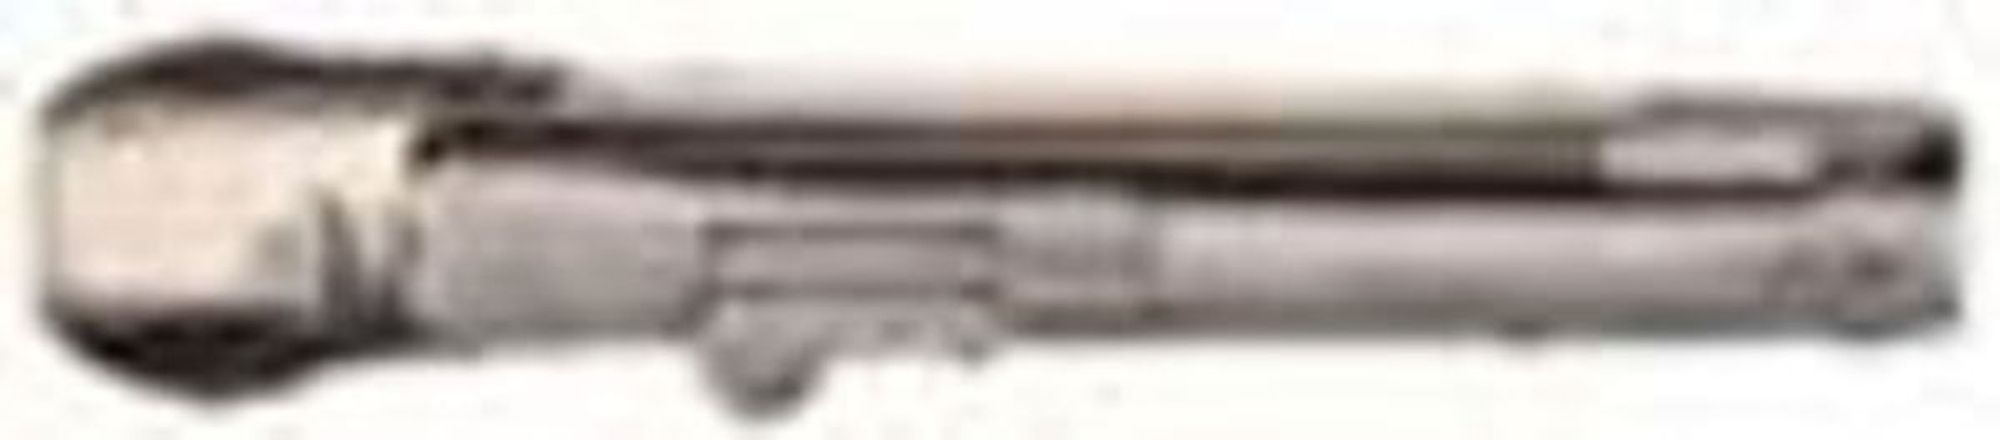 French corkscrew gun